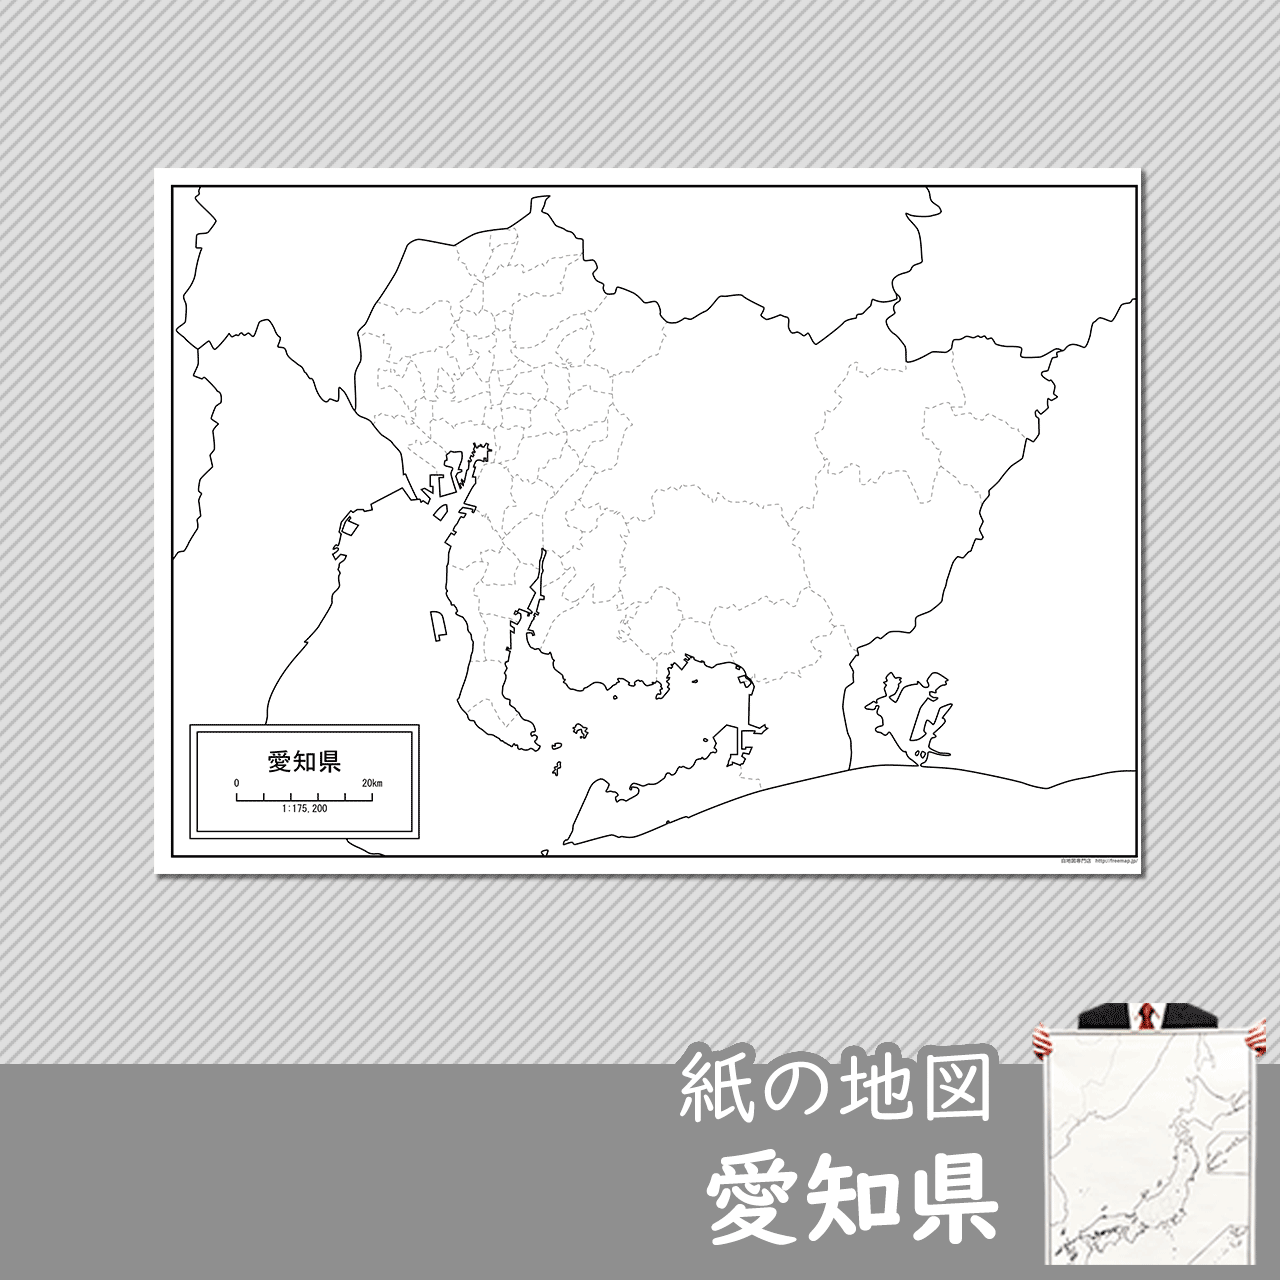 愛知県の紙の白地図のサムネイル